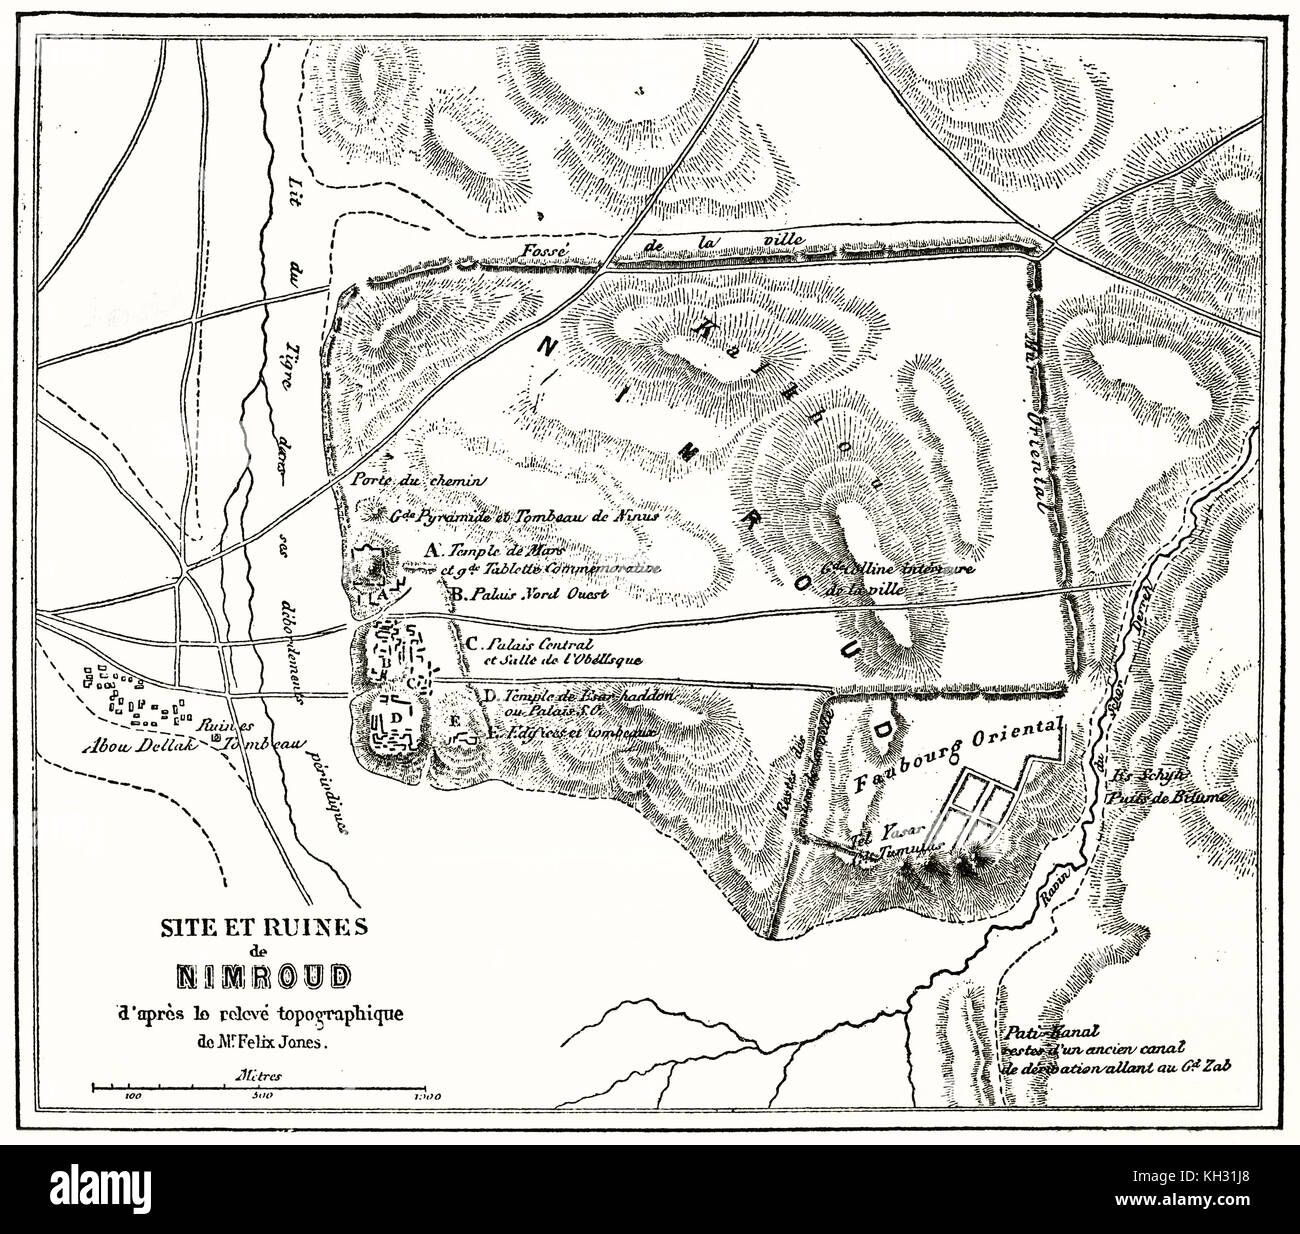 Plan antiguo de Nimrud sitio arqueológico. Después de Felix Jones, publ. en le Tour du Monde, París, 1863 Foto de stock